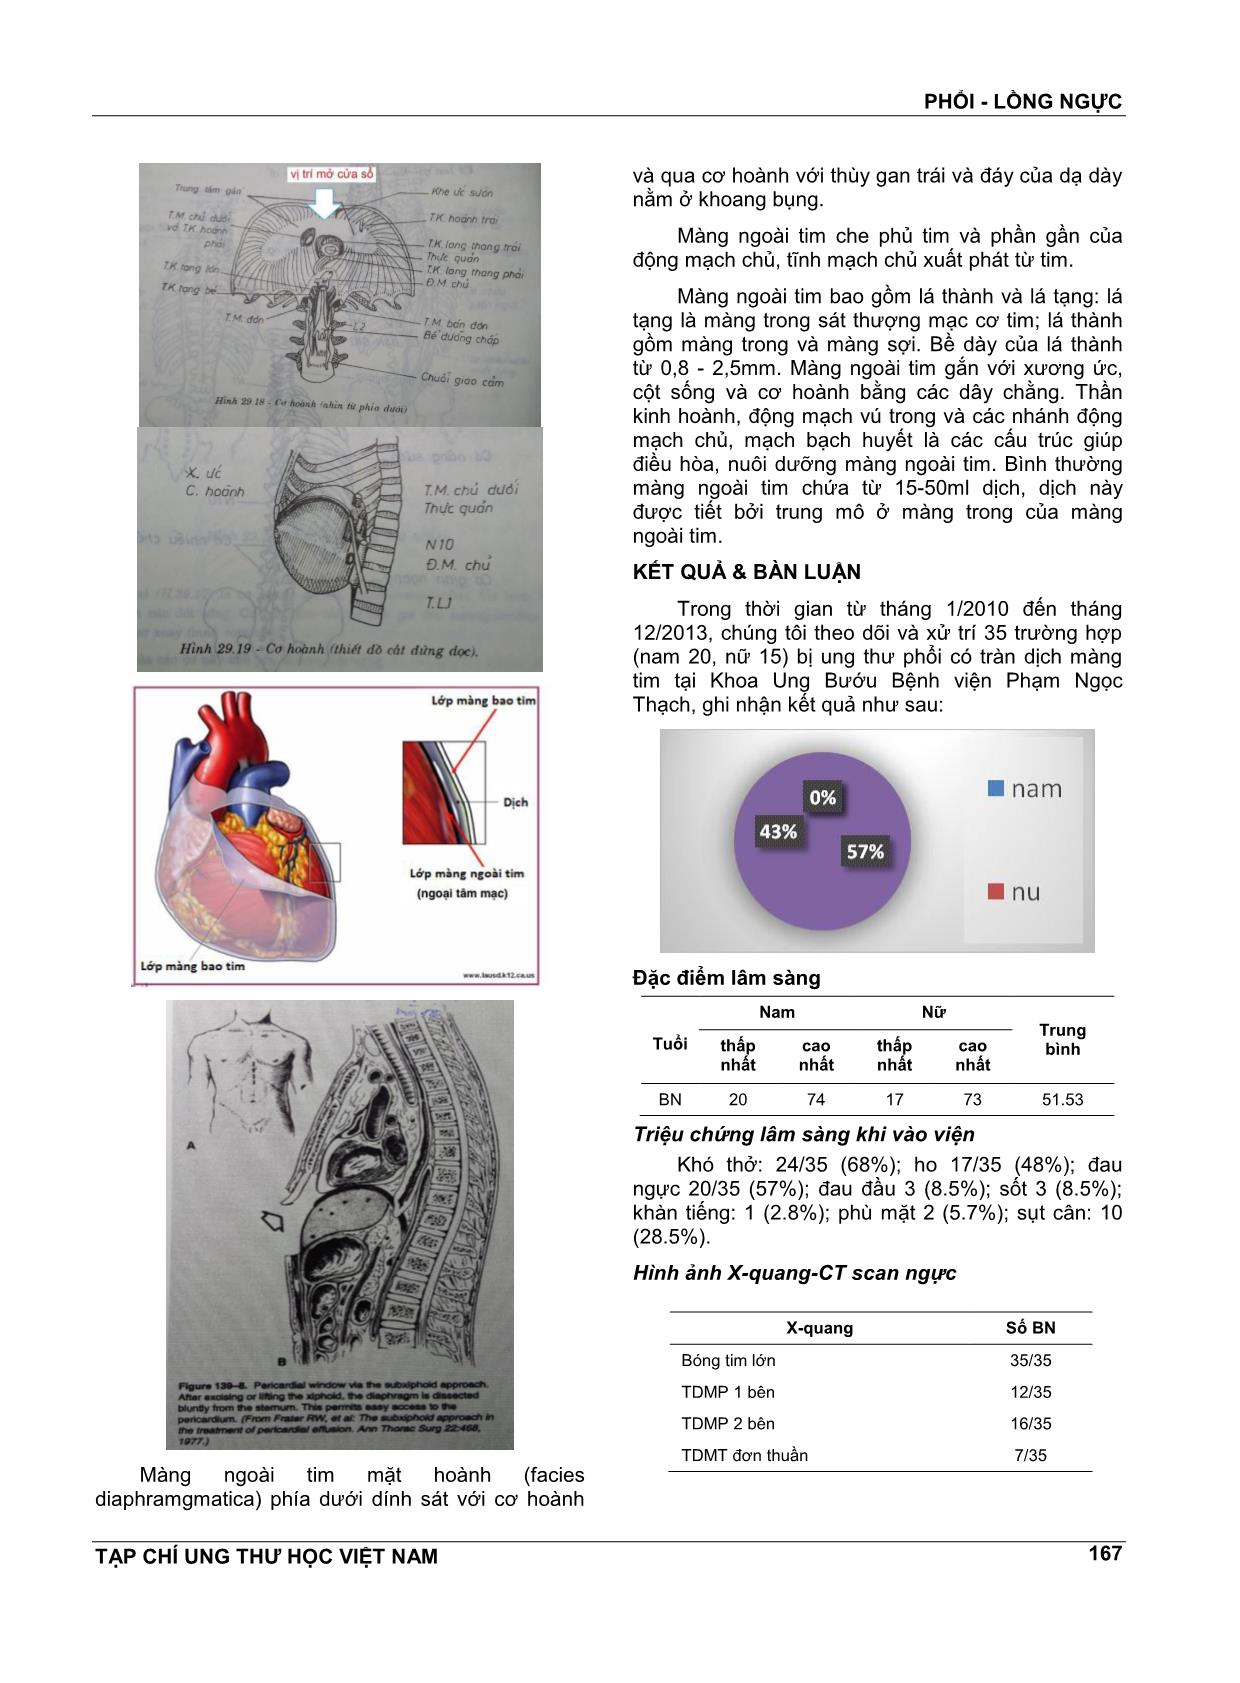 Mở cửa sổ màng ngoài tim trong điều trị tràn dịch màng ngoài tim ác tính ở bệnh nhân ung thư phổi trang 4